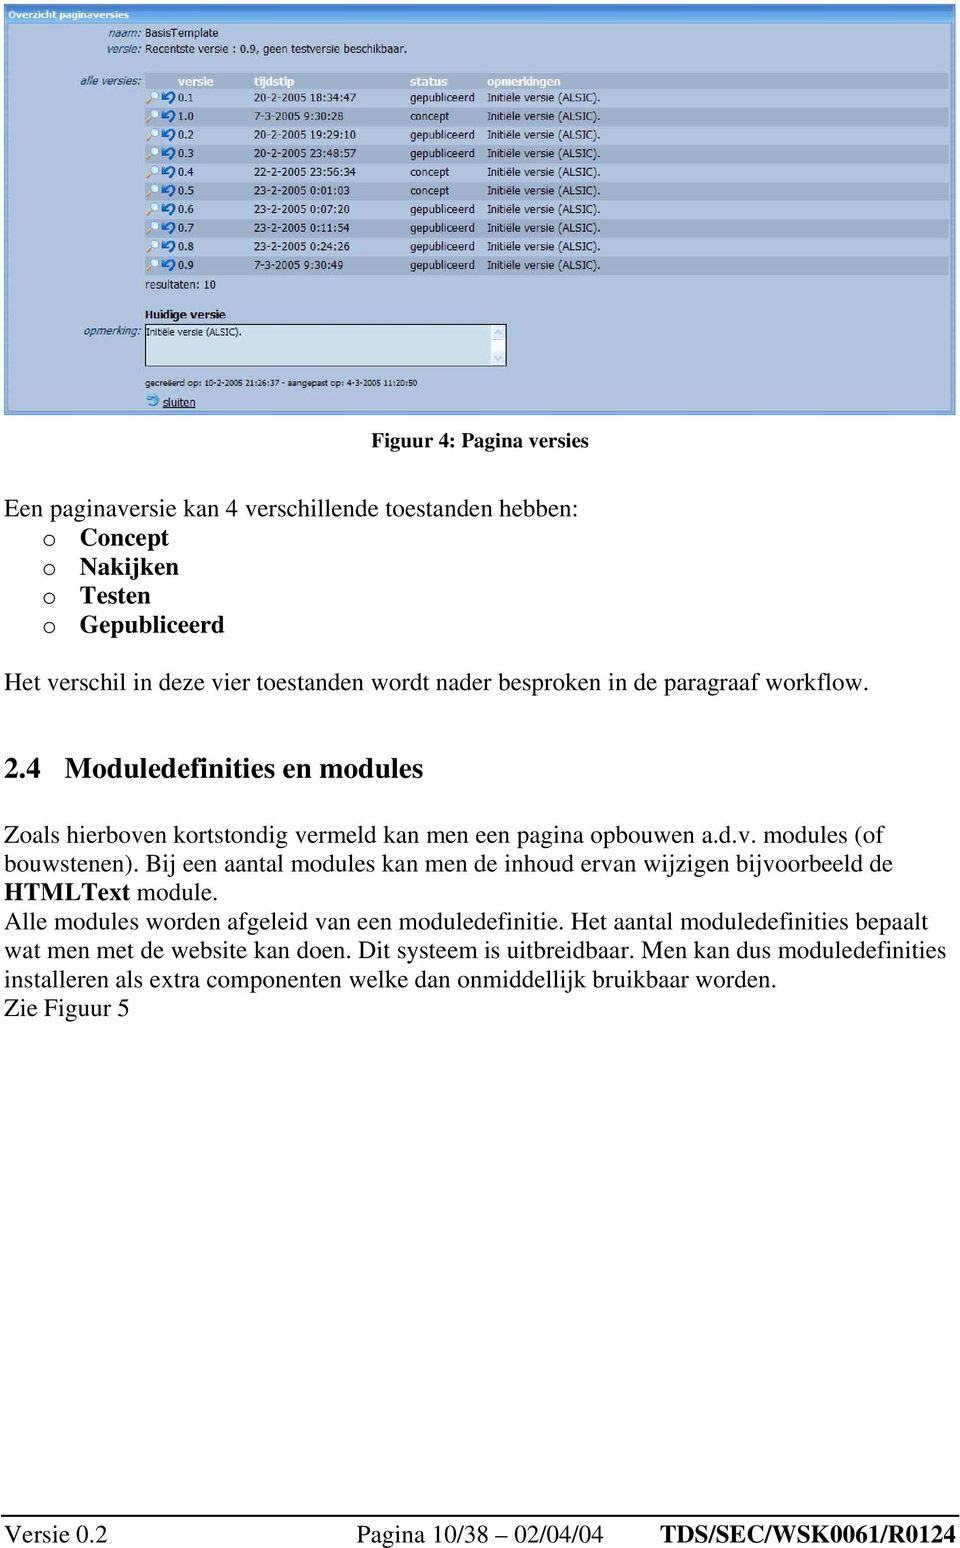 Bij een aantal modules kan men de inhoud ervan wijzigen bijvoorbeeld de HTMLText module. Alle modules worden afgeleid van een moduledefinitie.